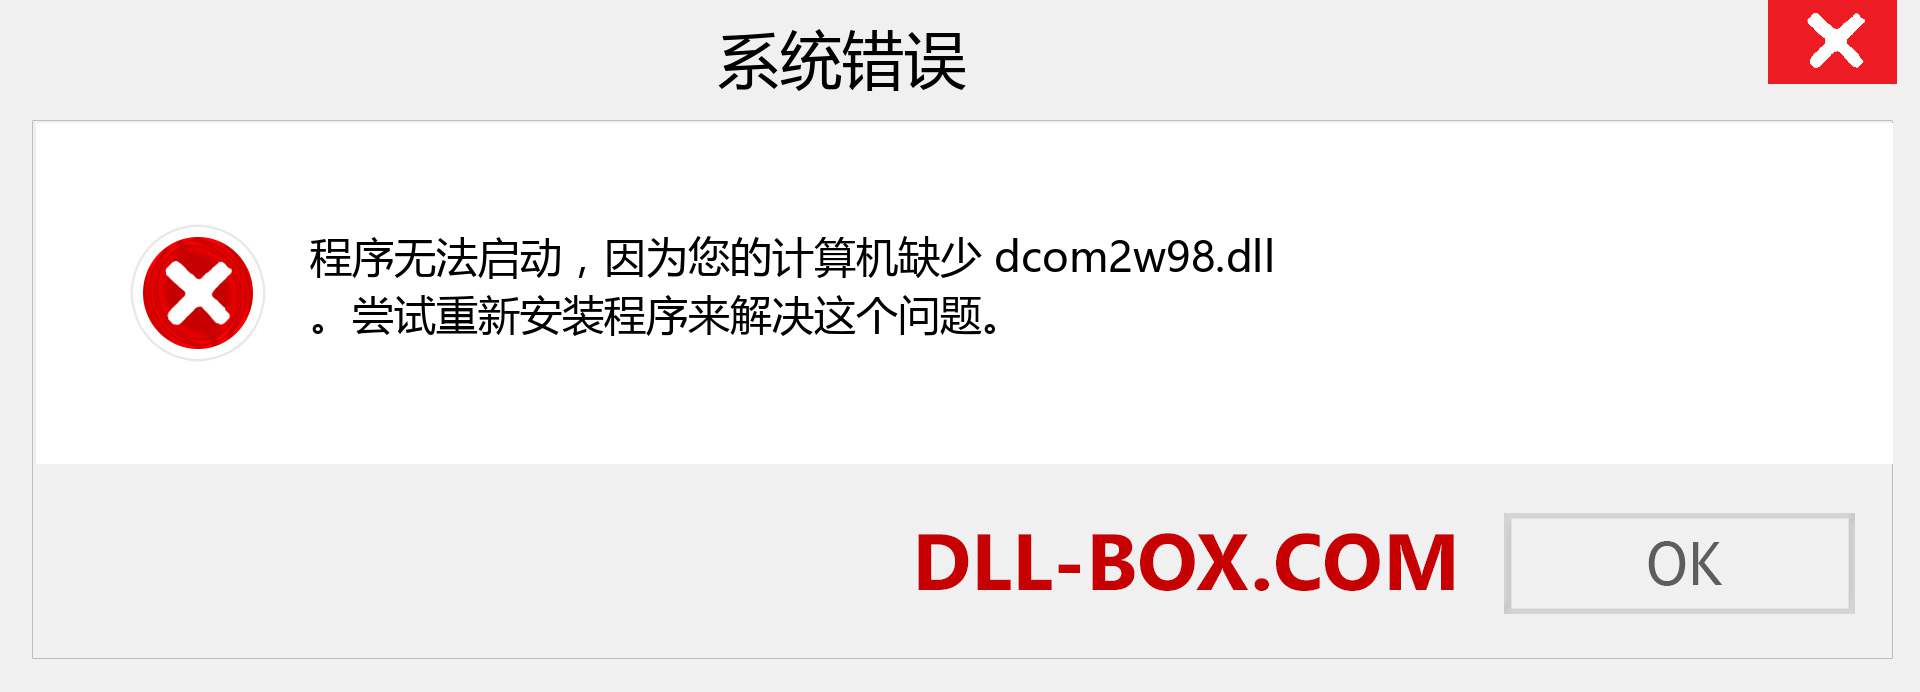 dcom2w98.dll 文件丢失？。 适用于 Windows 7、8、10 的下载 - 修复 Windows、照片、图像上的 dcom2w98 dll 丢失错误